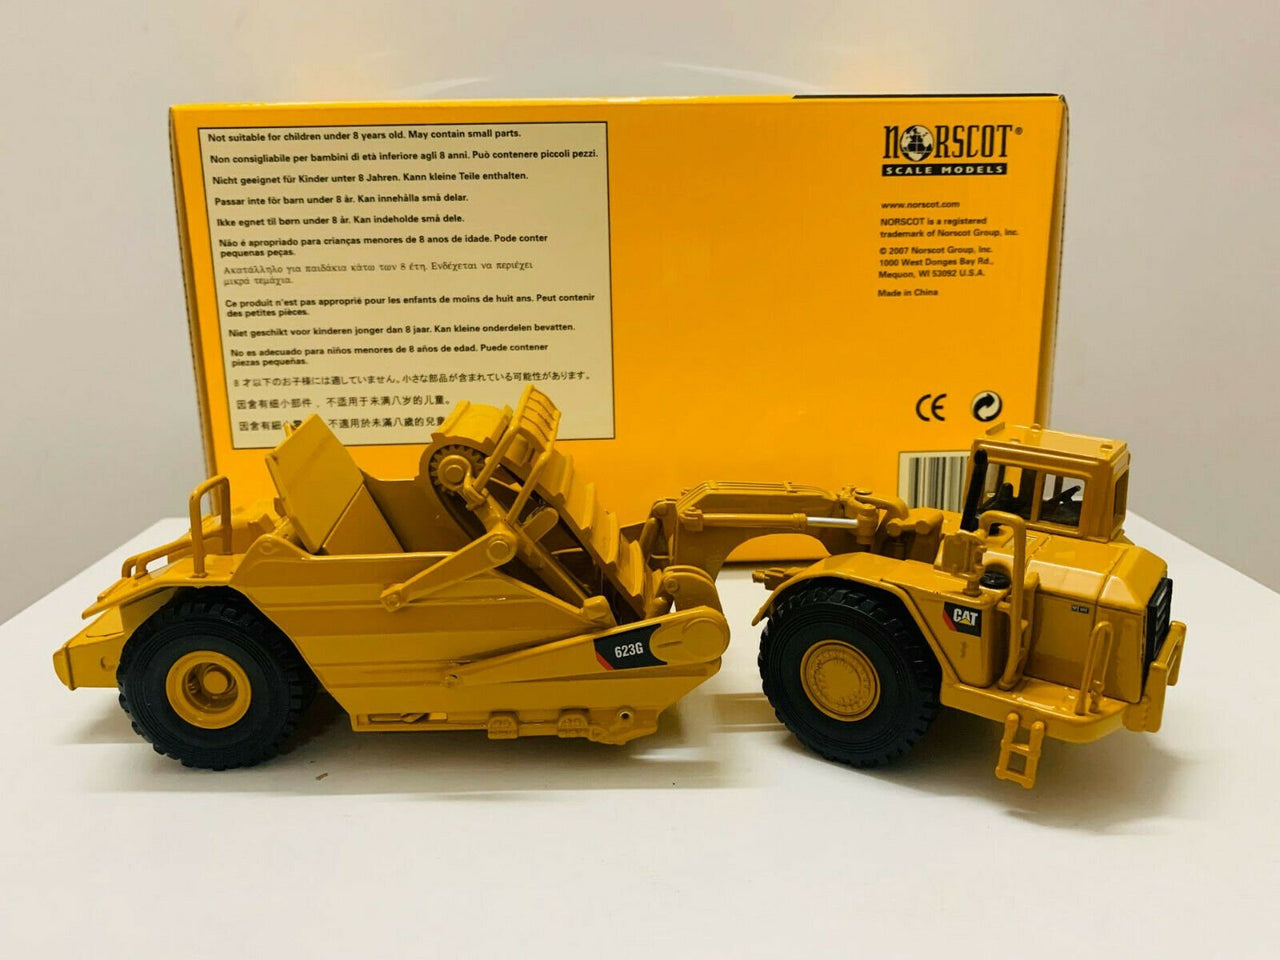 55097 Caterpillar 623G Scraper 1:50 Scale (Discontinued Model)